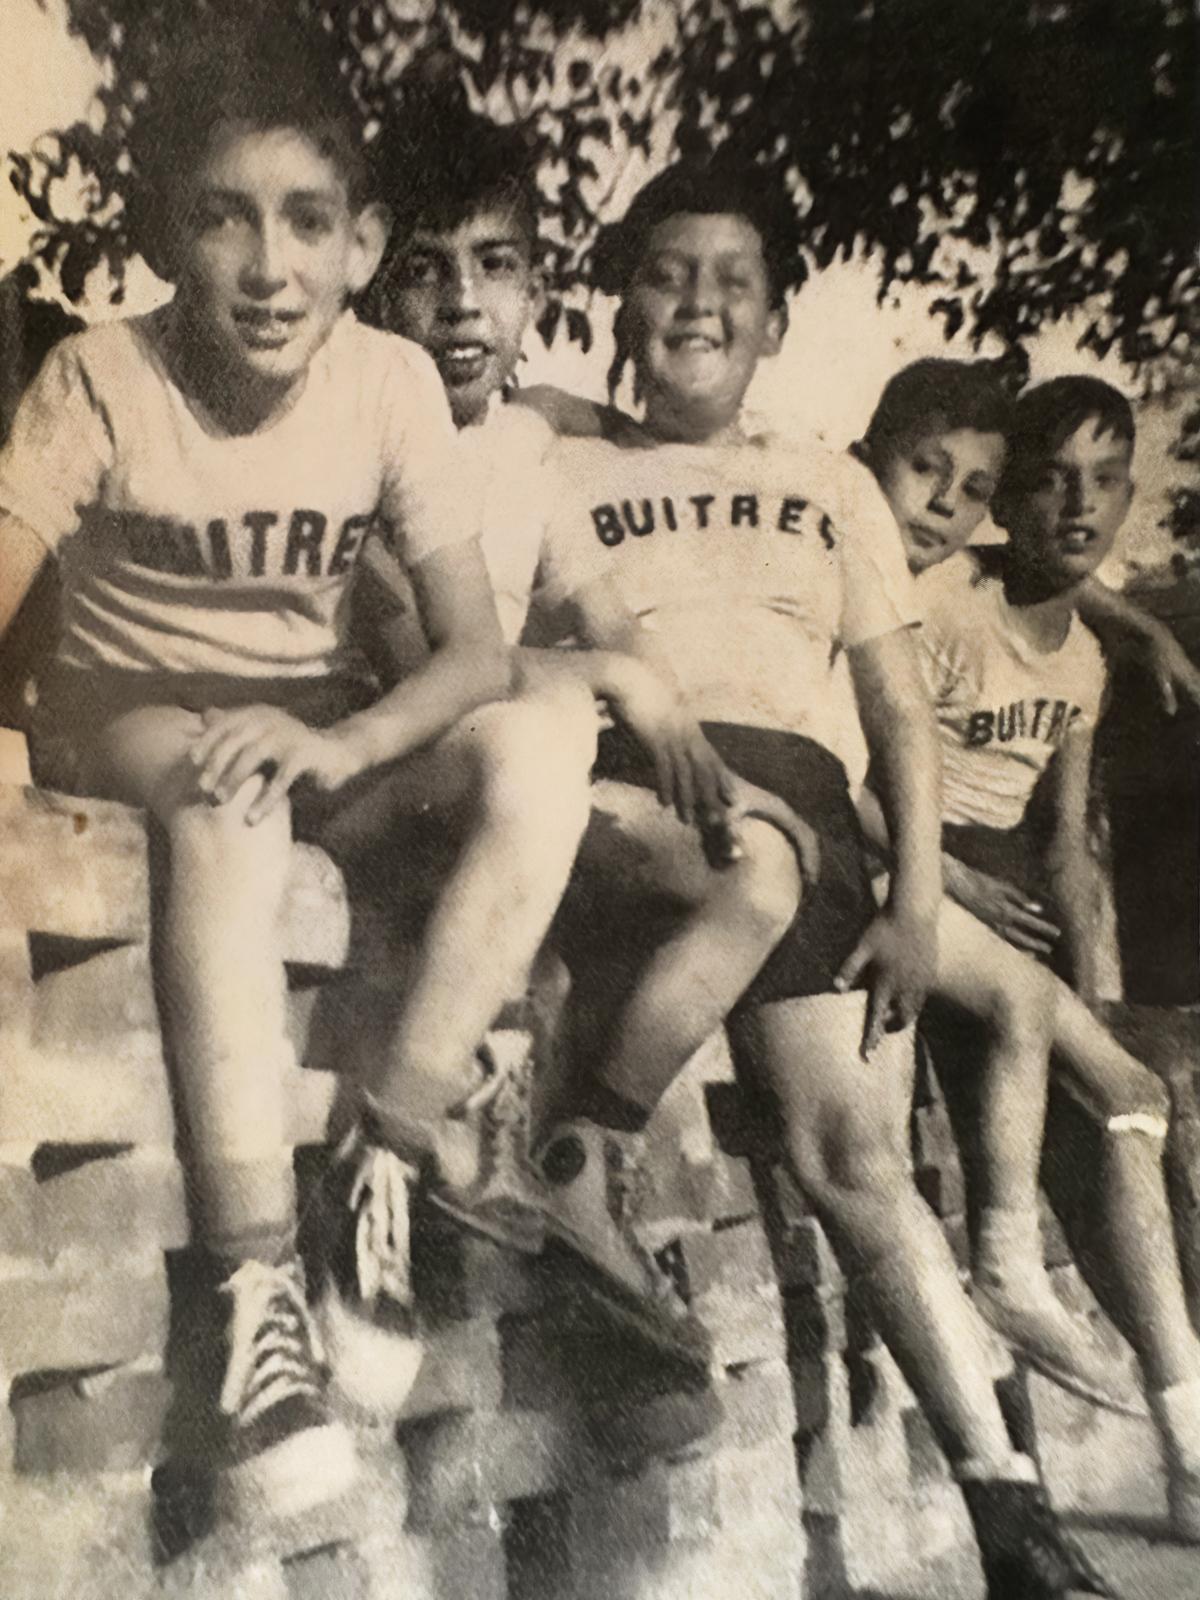 $!Víctor Mohamar estudió en el icónico Colegio Zaragoza, entre sus fotos, hay recuerdos de aquellos días en donde jugaba basquetbol con Don Armando Castilla en el equipo Buitres.